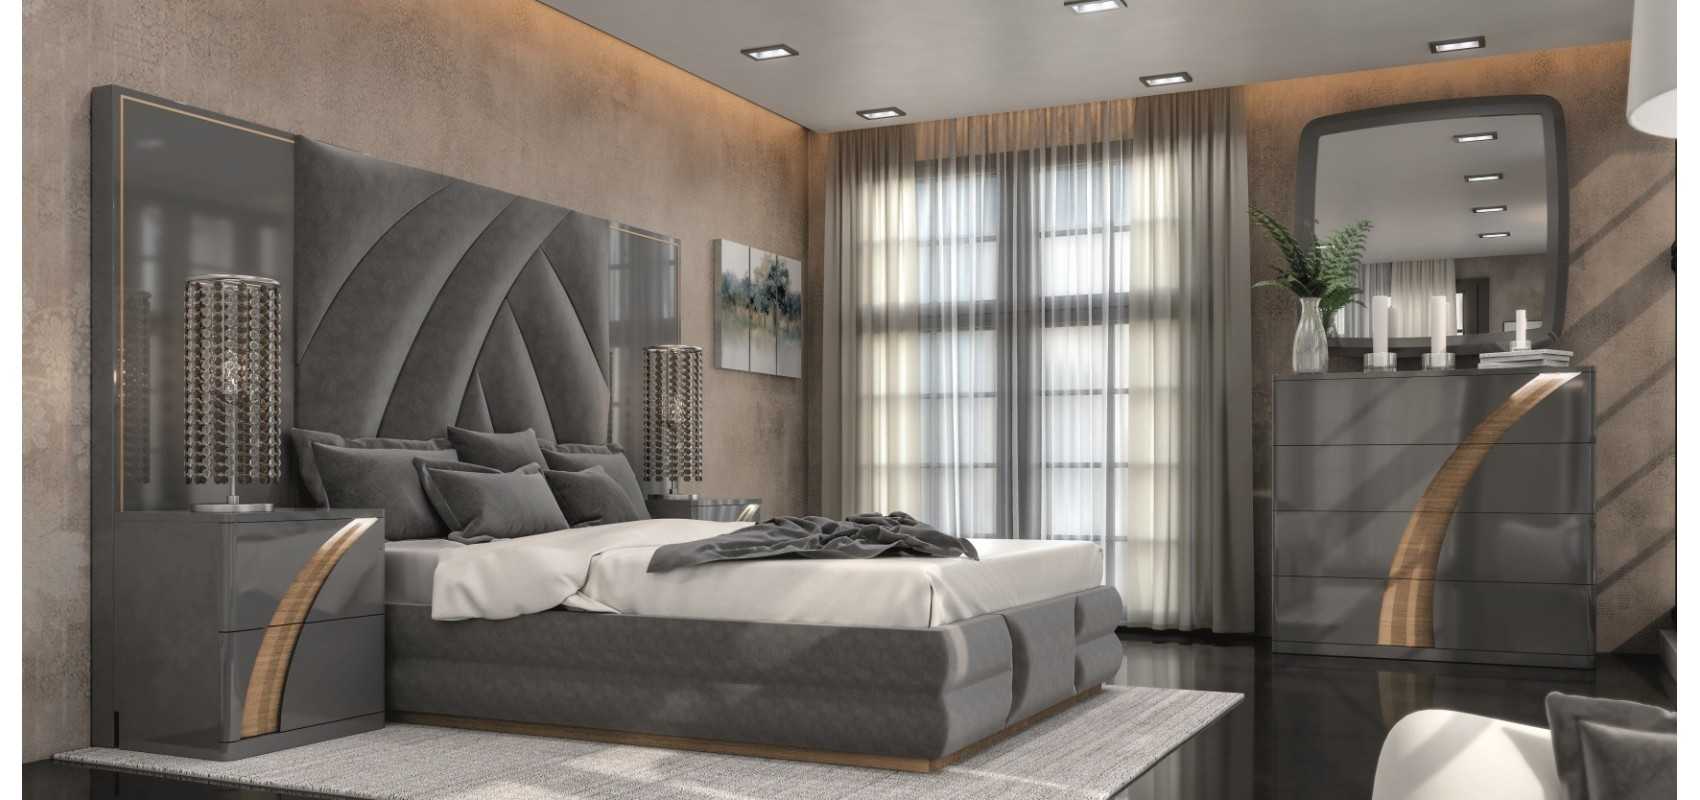 Muebles para tu Dormitorio - Elegantes y Prácticos - Decoanko